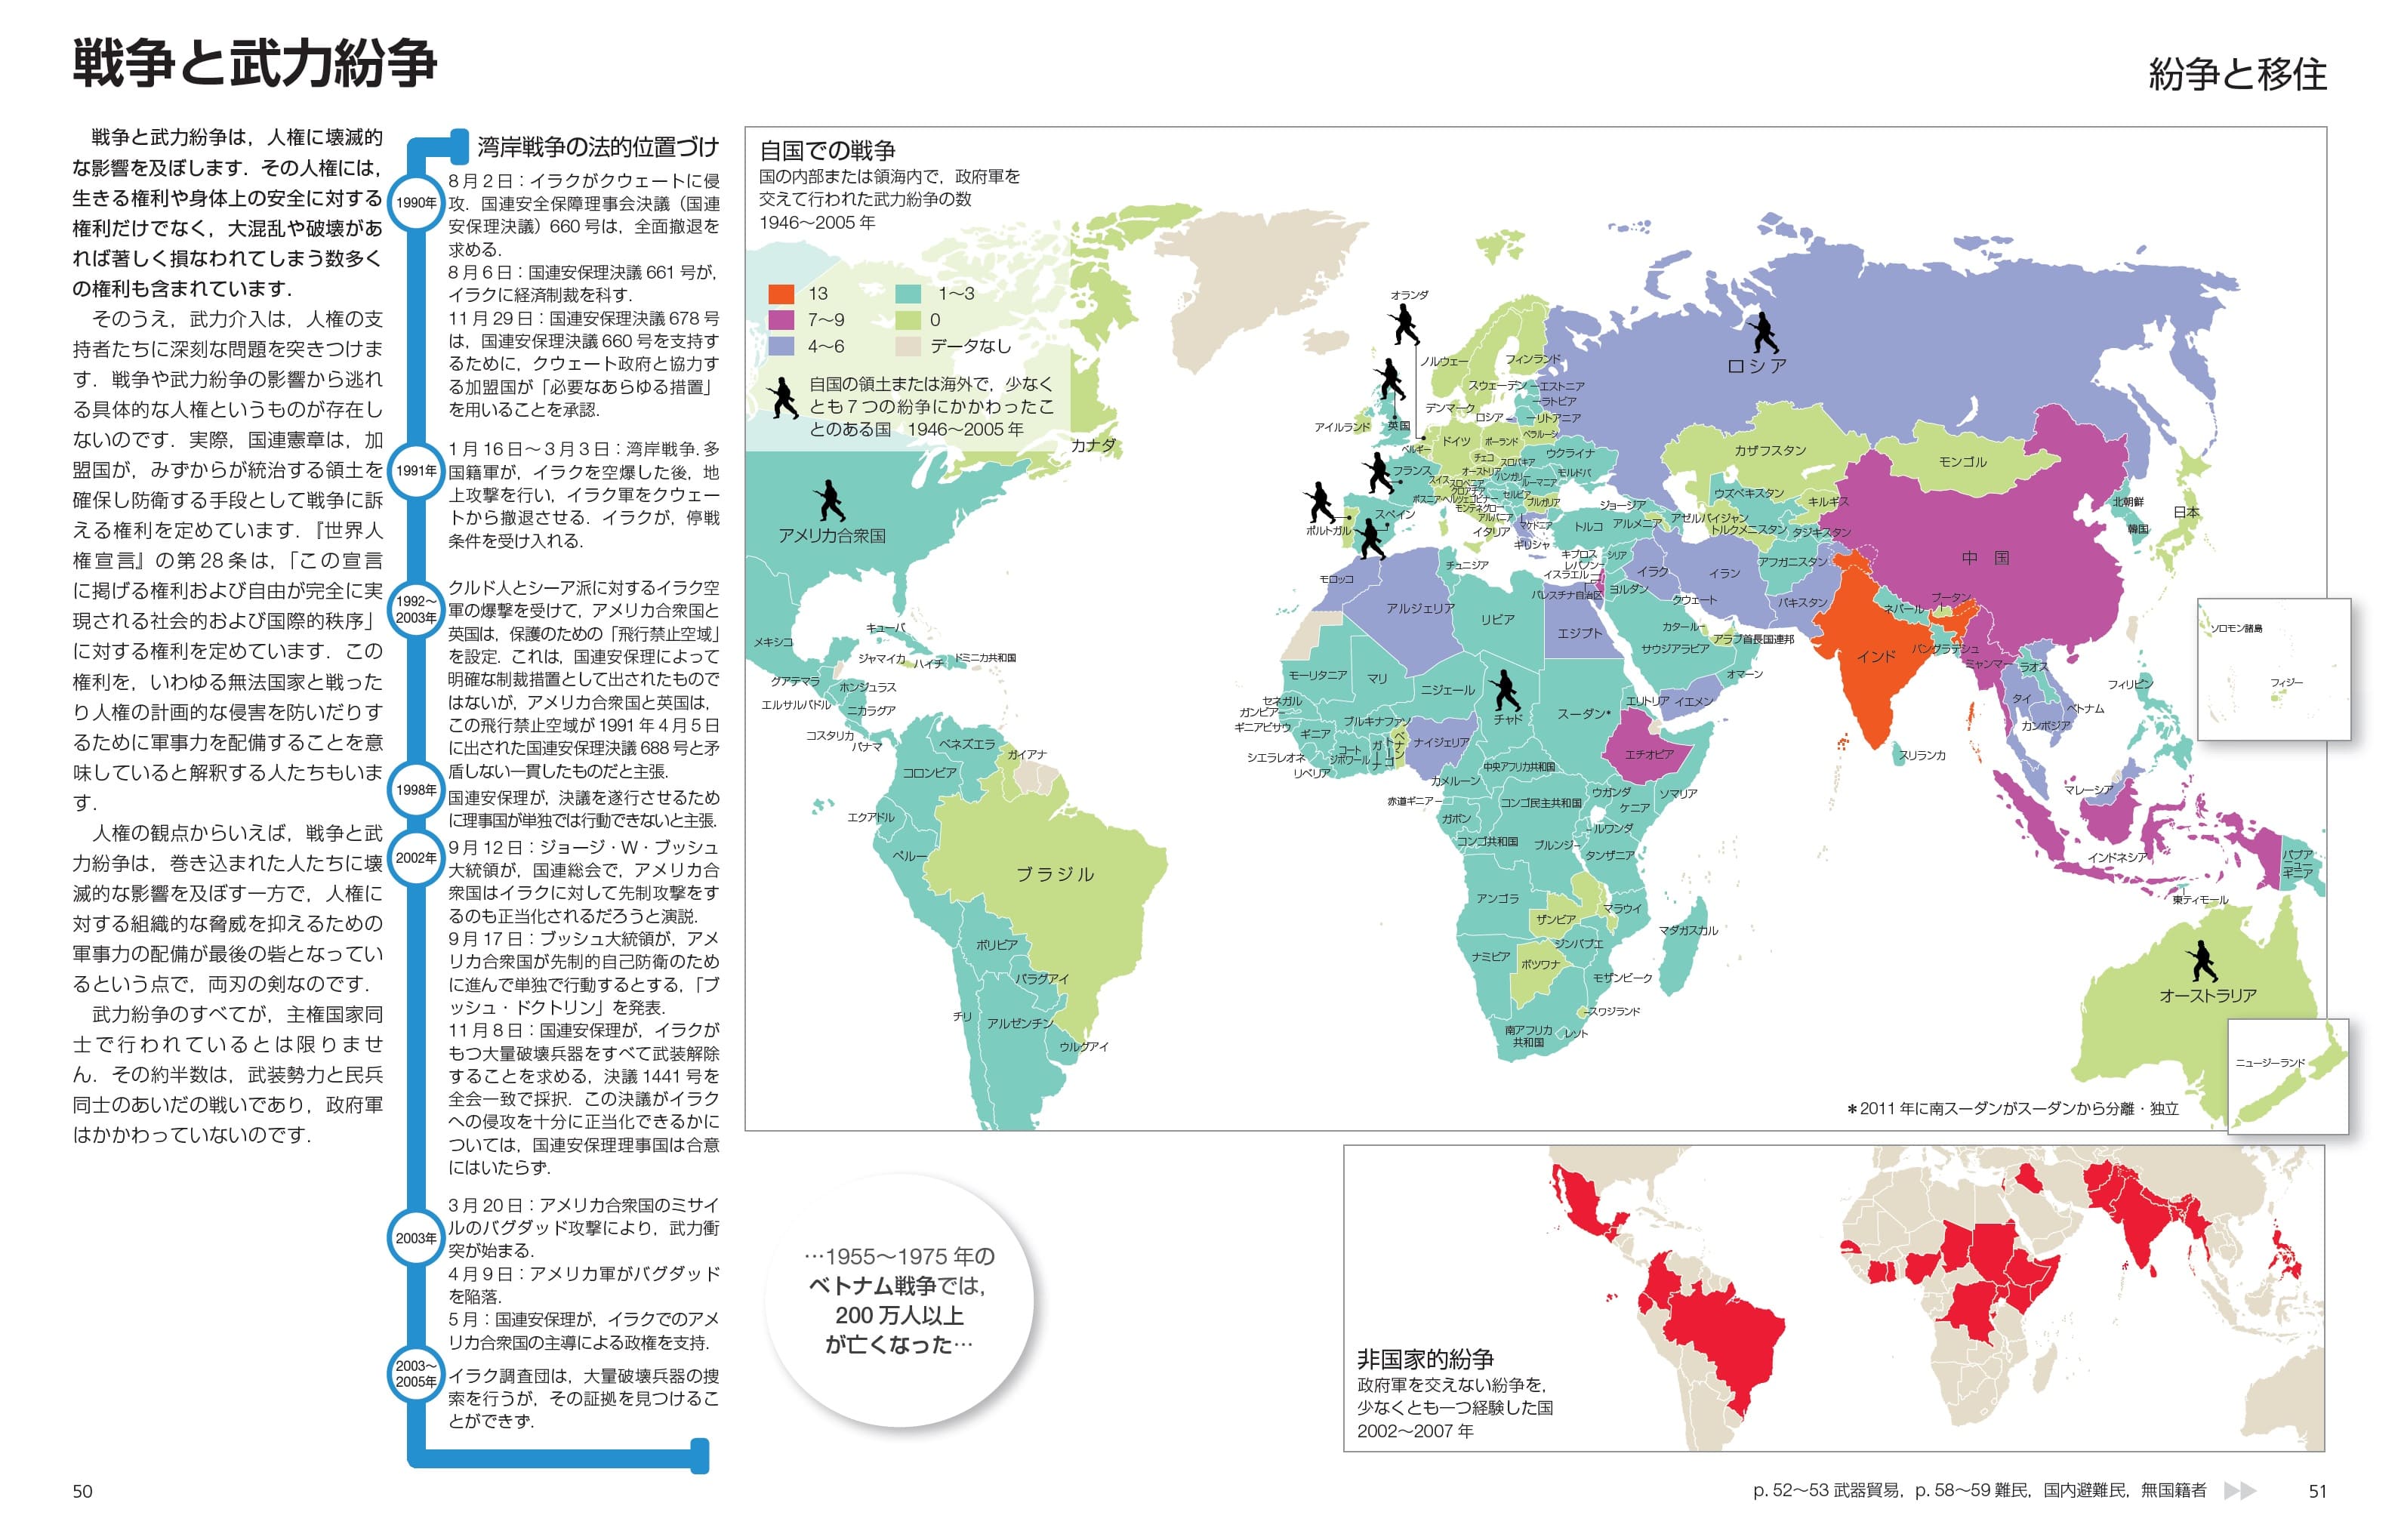 データに基づき色付けされた地図で世界中の様々な事情がわかる 世界地図シリーズ 丸善出版 理工 医学 人文社会科学の専門書出版社